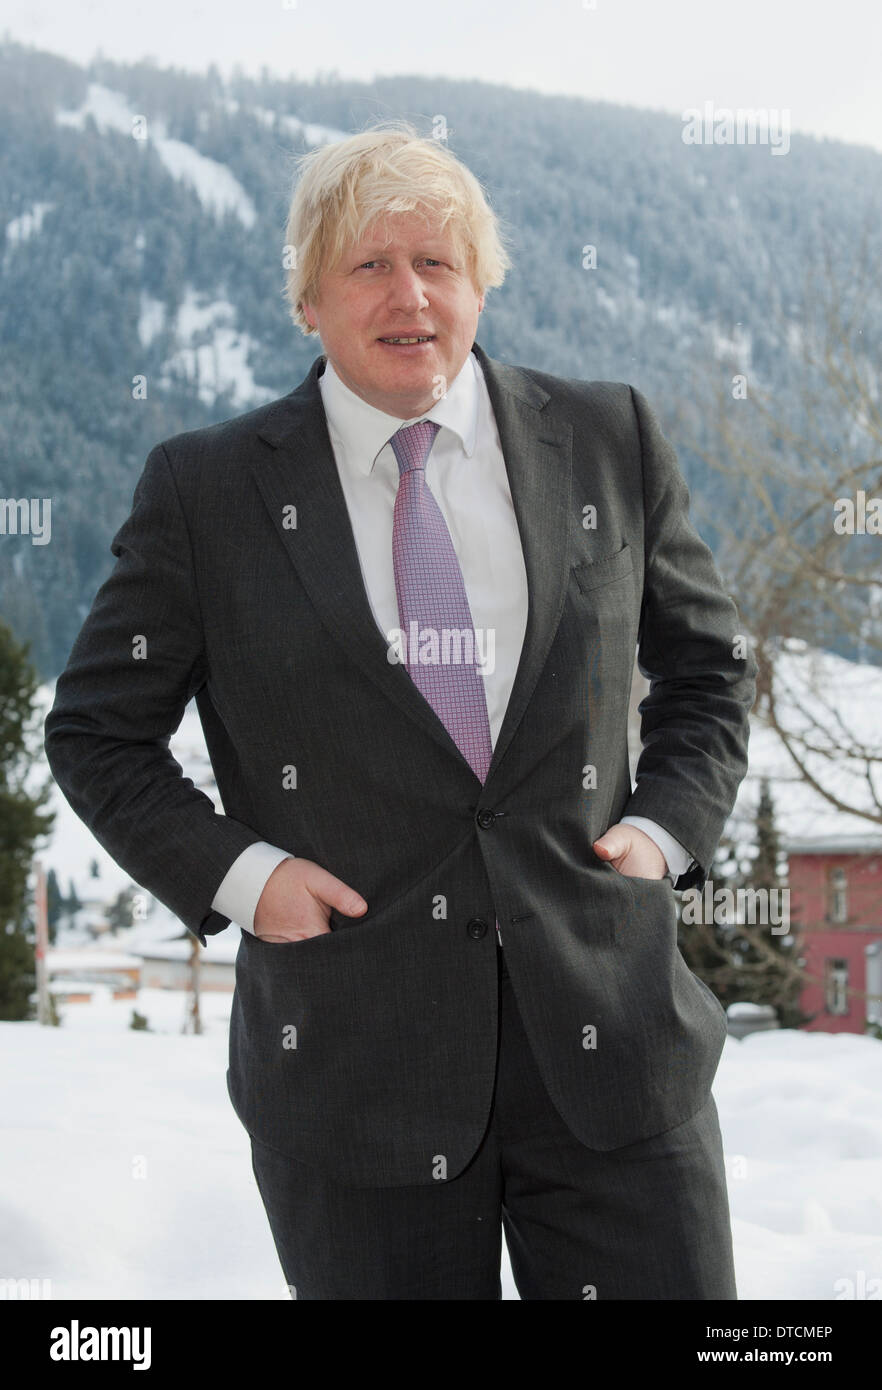 Boris Johnson, Maire de Londres à Davos, en Suisse, au cours de sa visite au Forum économique mondial (WEF) le 25 janvier 2013. Banque D'Images